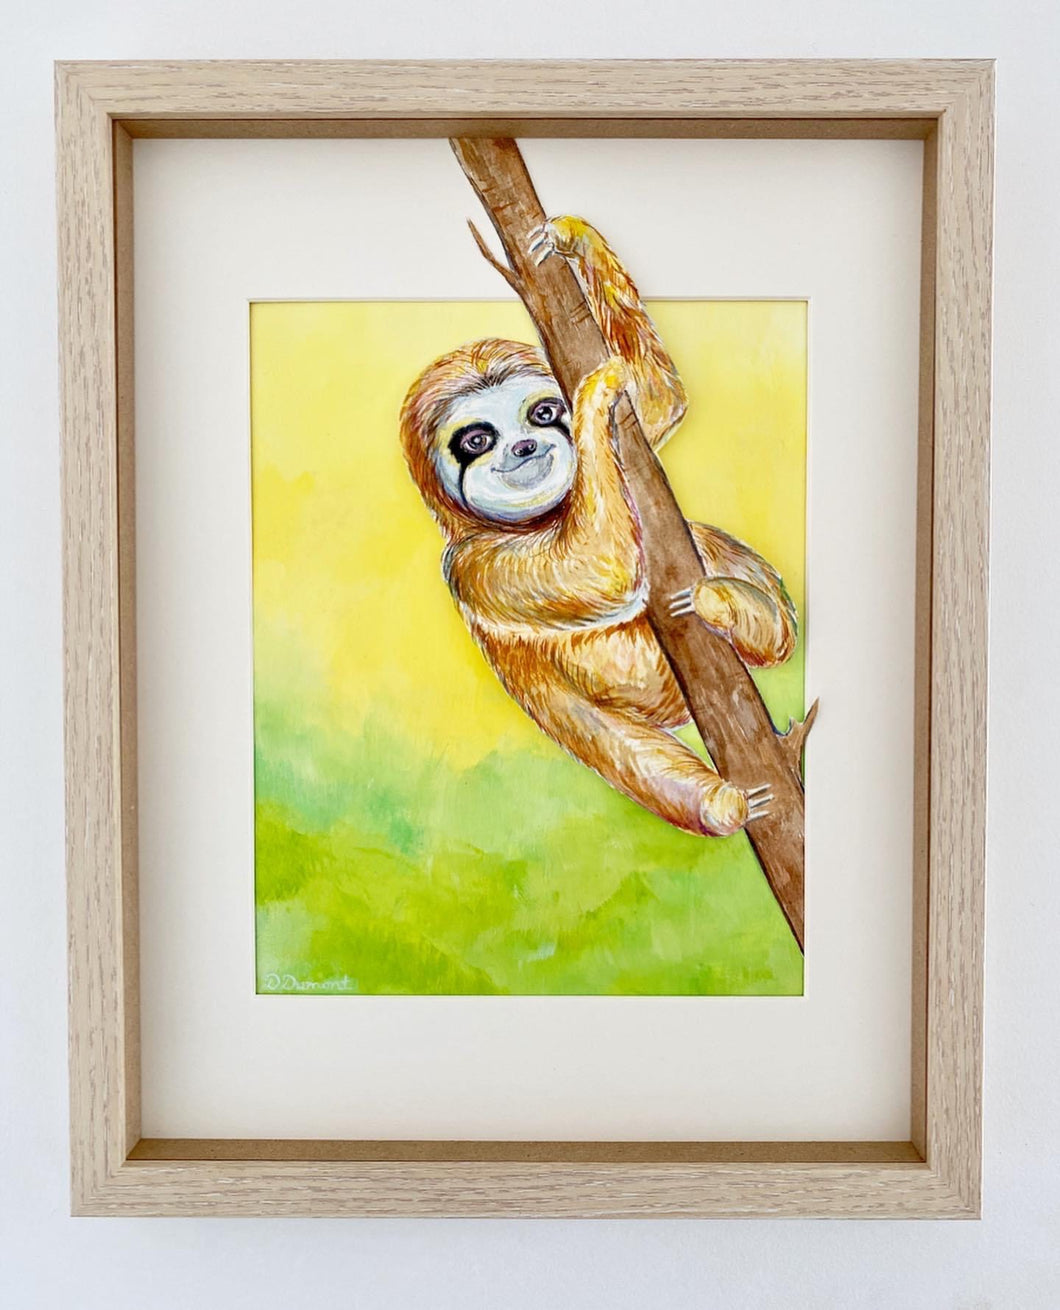 A Sloth to Make You Smile